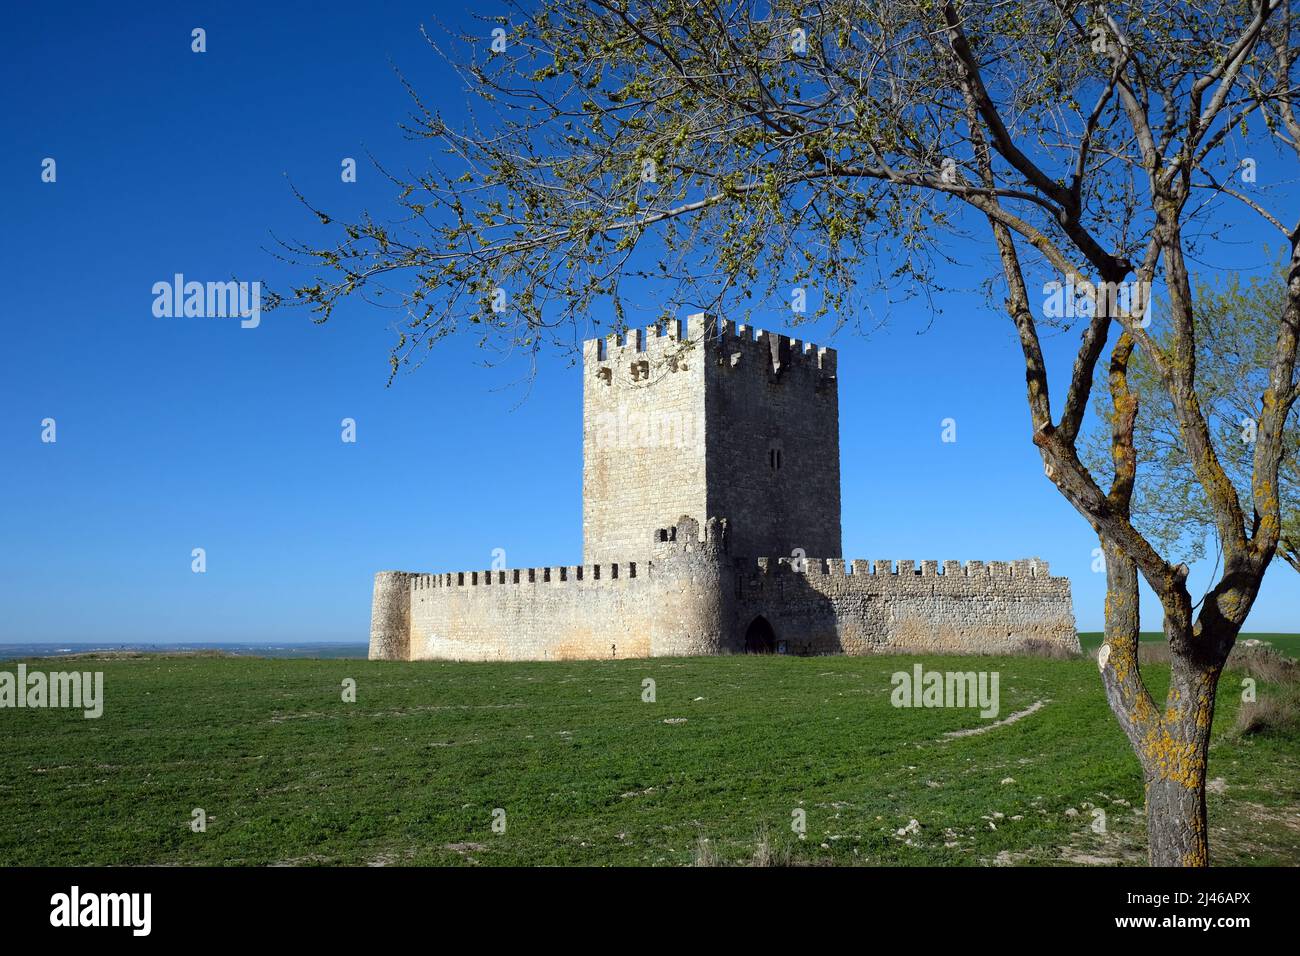 Castle of Tellez de Meneses, Tiedra, Valladolid, Castile and León, Spain Stock Photo